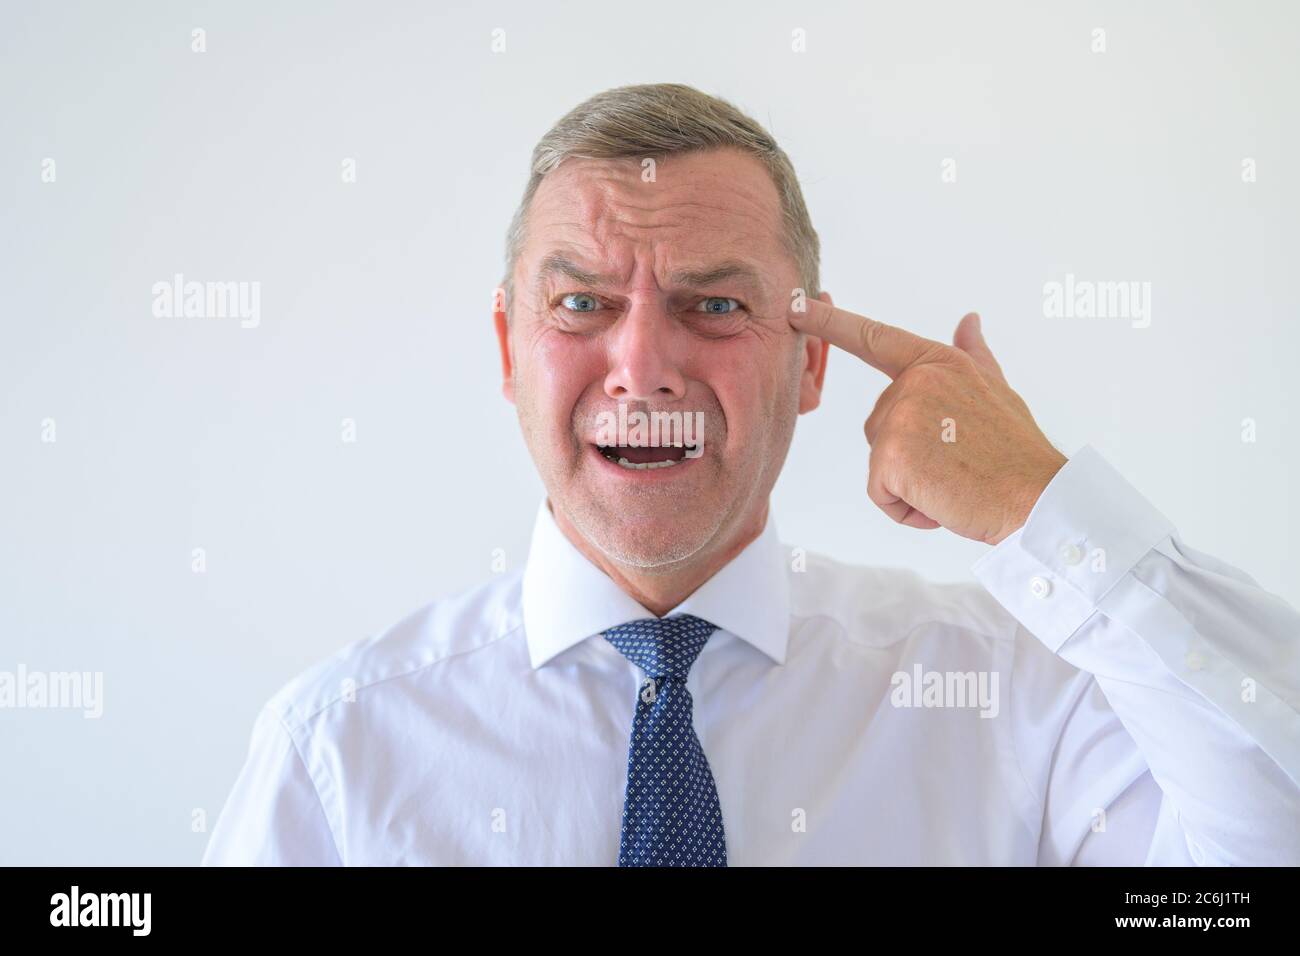 Besorgter Mann mit einem angstlosen hoffnungslosen Ausdruck macht eine Pistole Geste zeigt auf seinen Kopf mit seiner Hand Konzept der Selbstmordgedanken in einem Kopf und Stockfoto